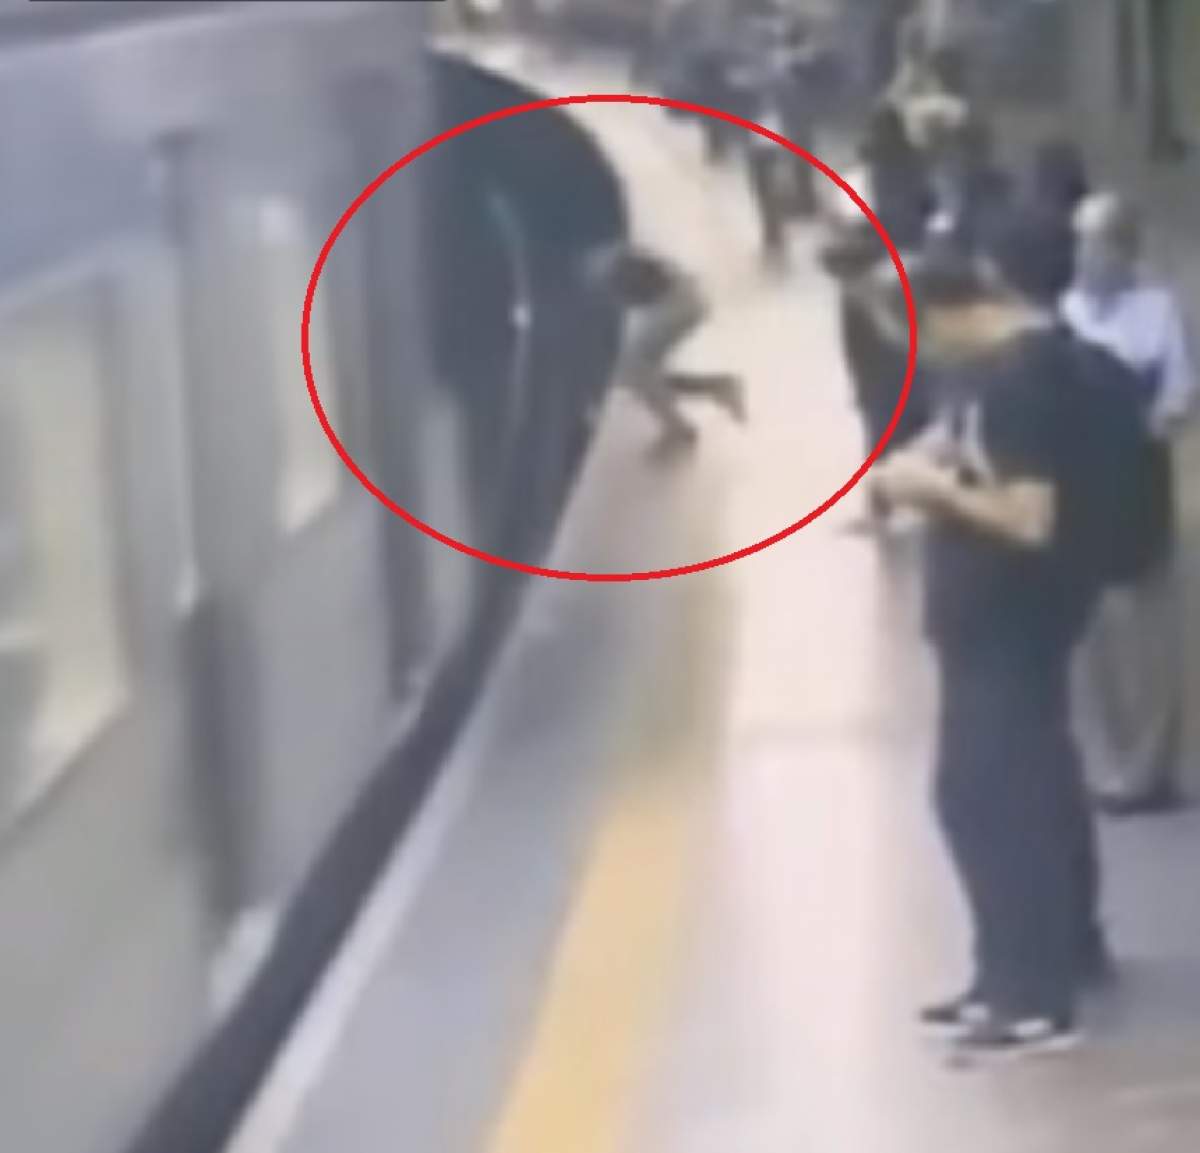 VIDEO / Imagini şocante! O tânără de 23 de ani a fost împinsă în faţa metroului exact când trenul intra în staţie